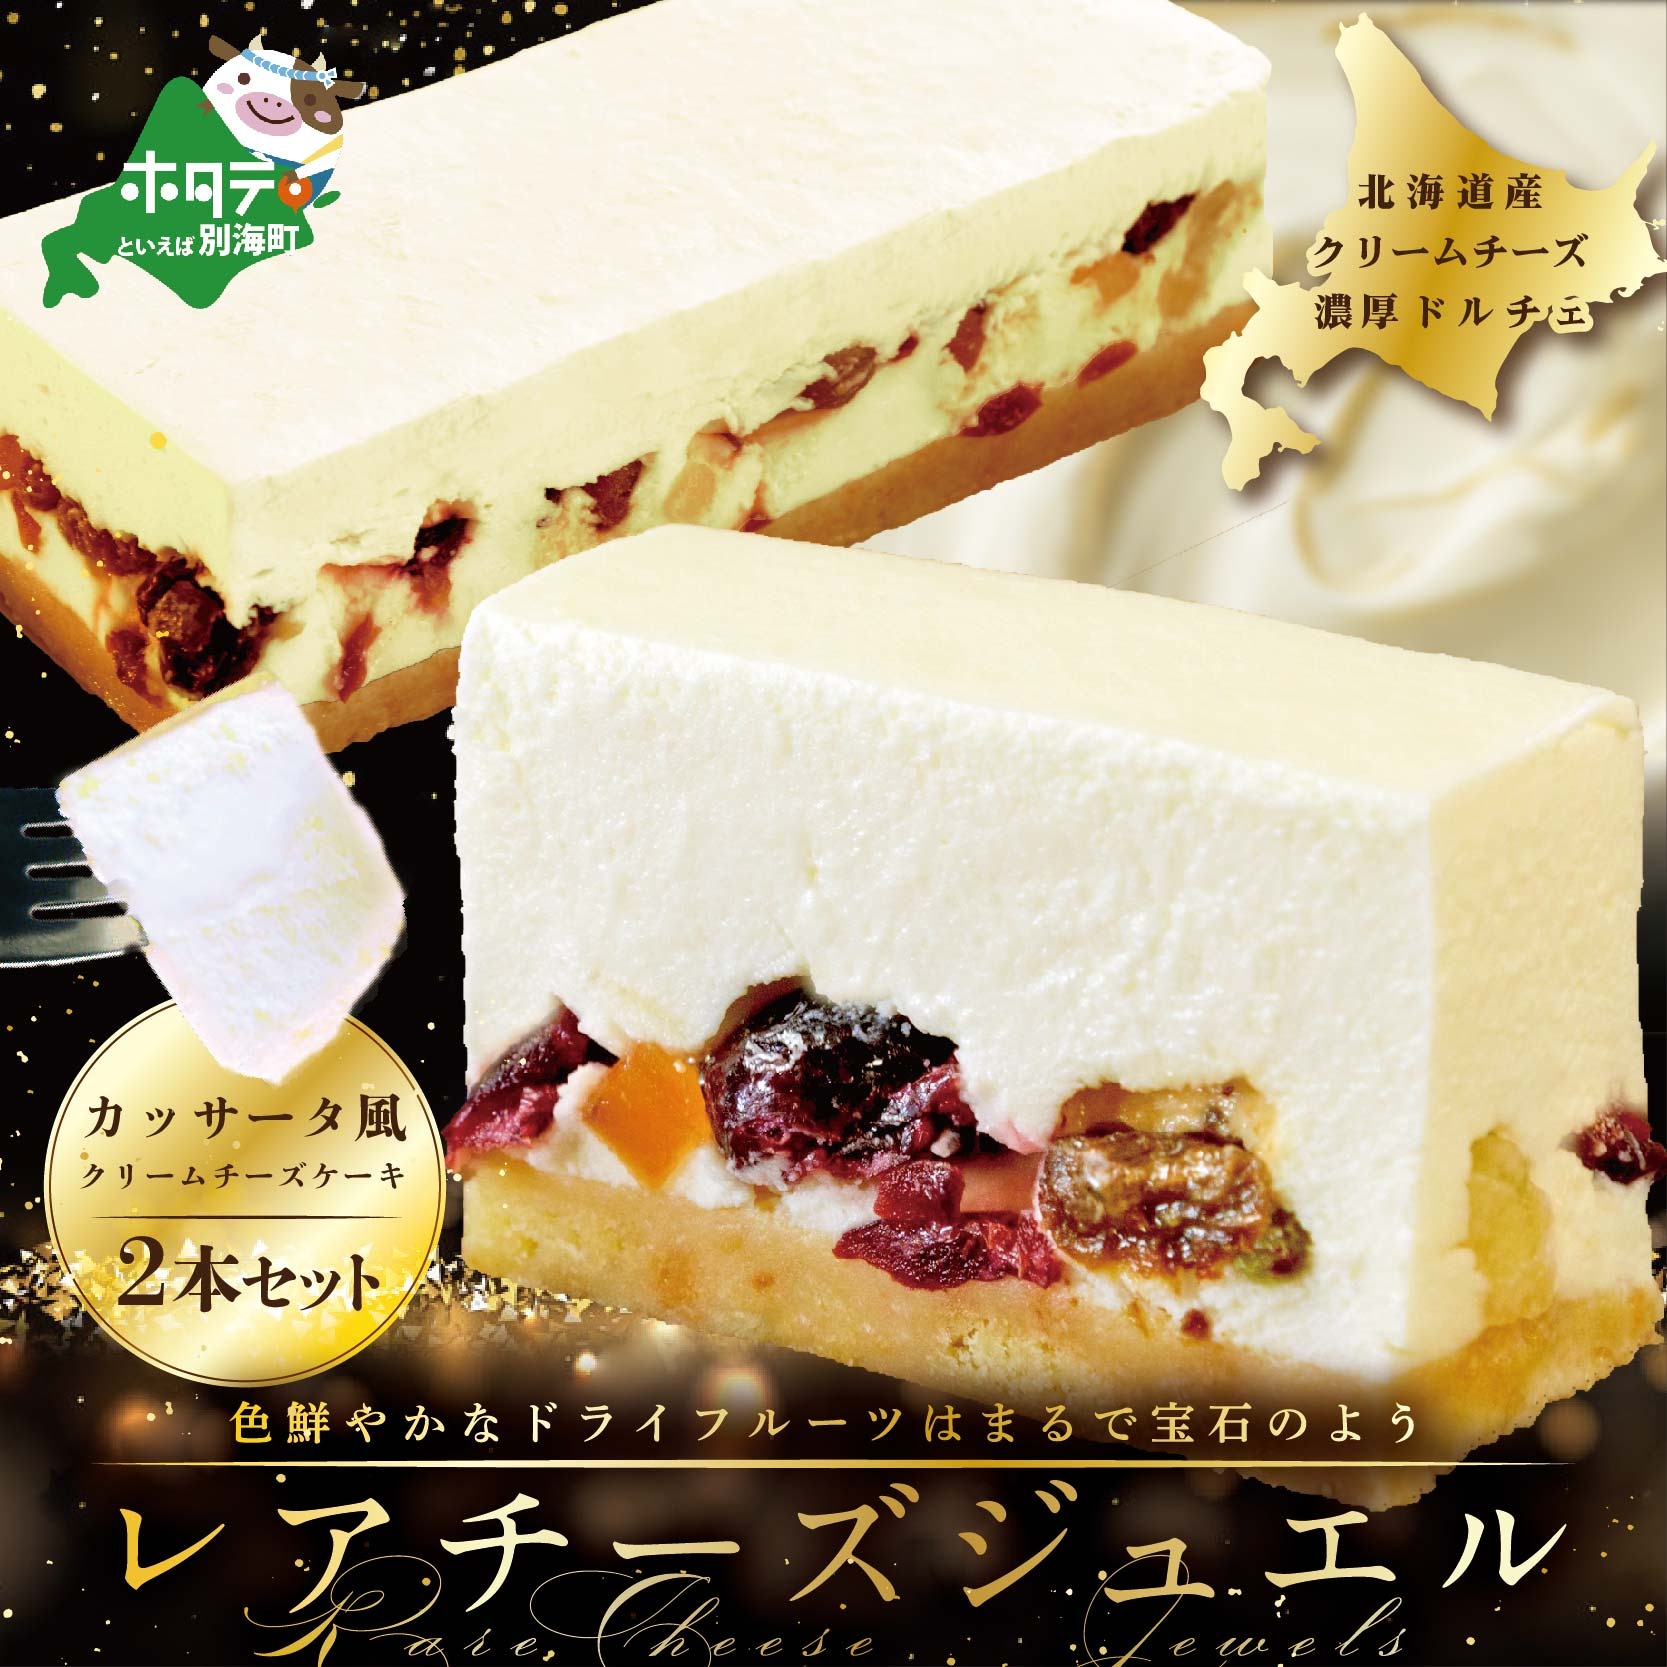 新登場 カッサータ 風 チーズケーキ 「レアチーズジュエル 2本セット」